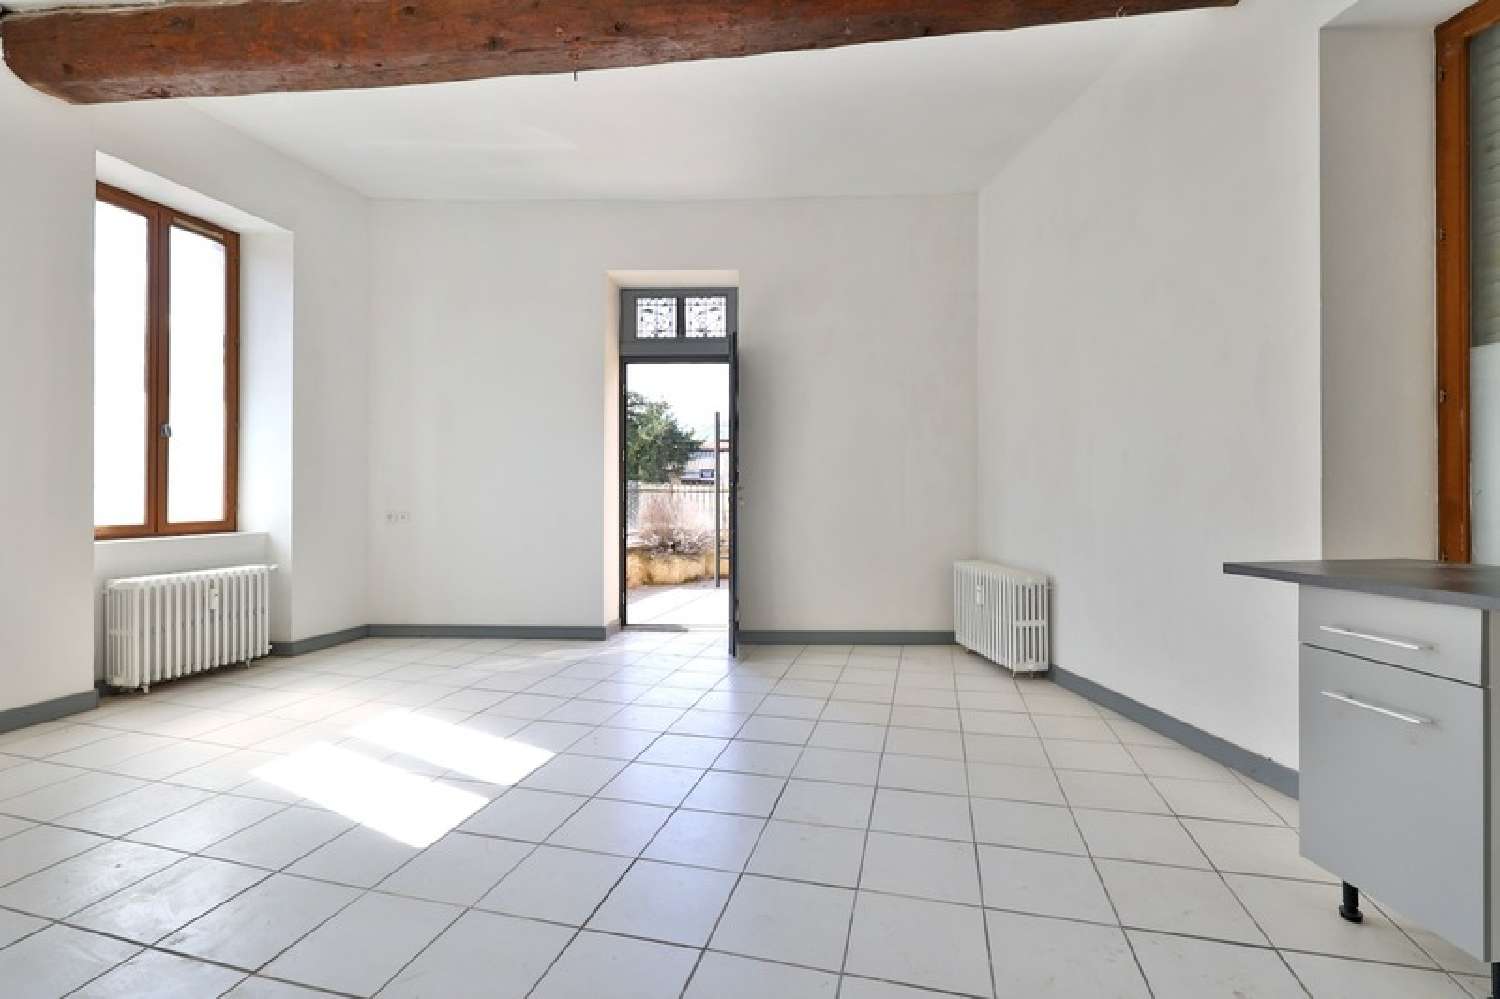  for sale apartment Pontcharra-sur-Turdine Rhône 4